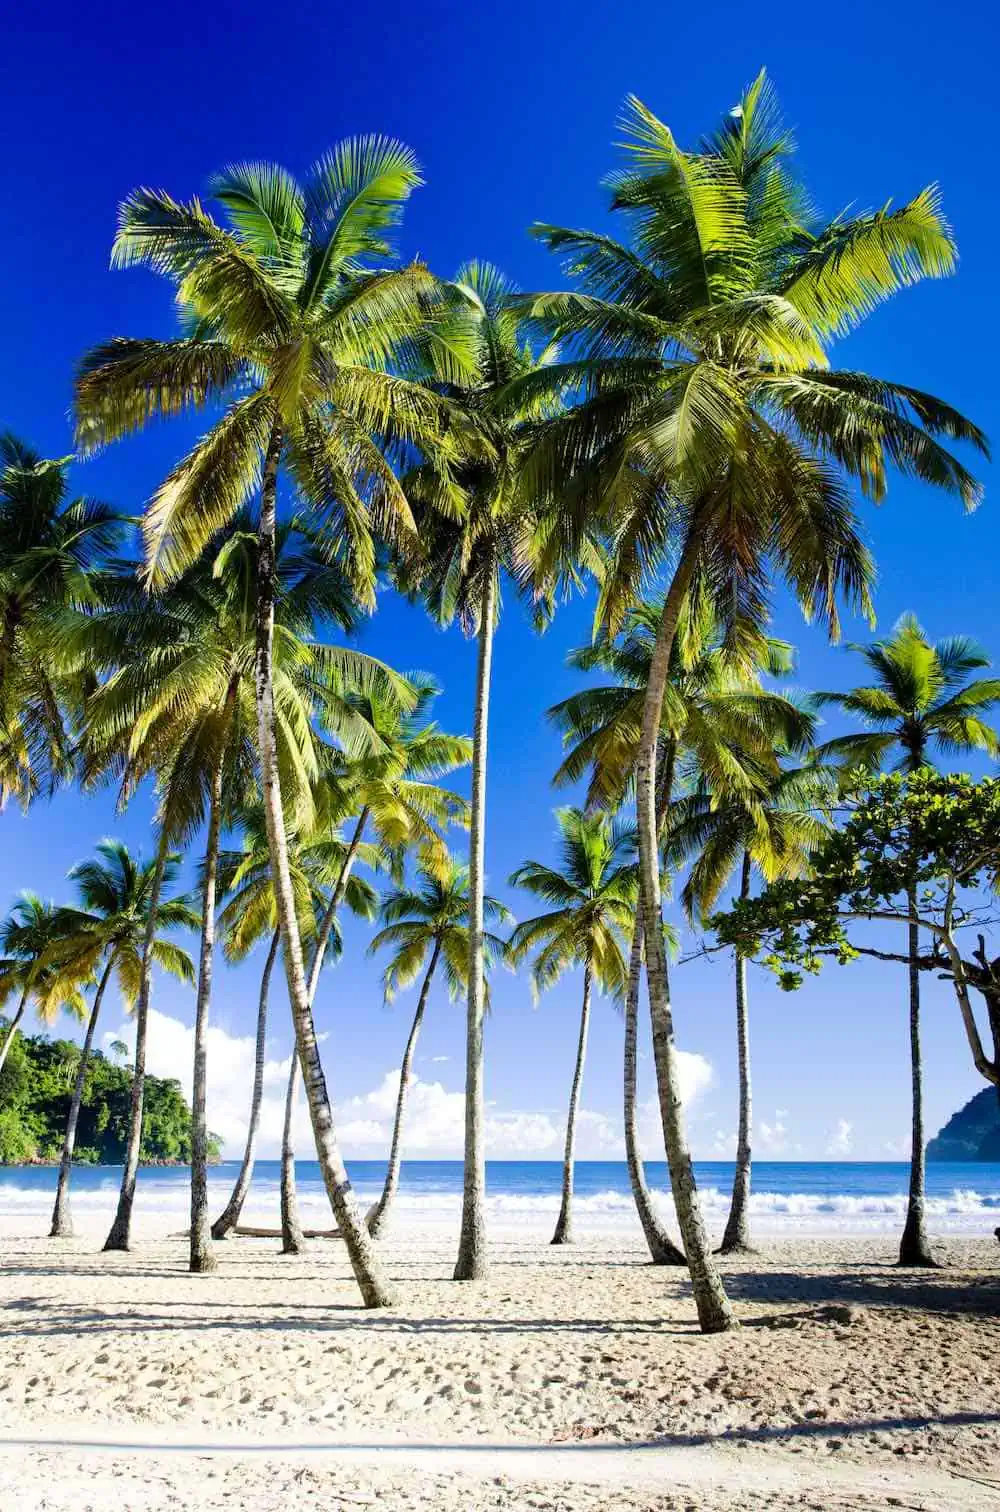 Palm trees on a sunny day at Maracas Beach in Trinidad. 